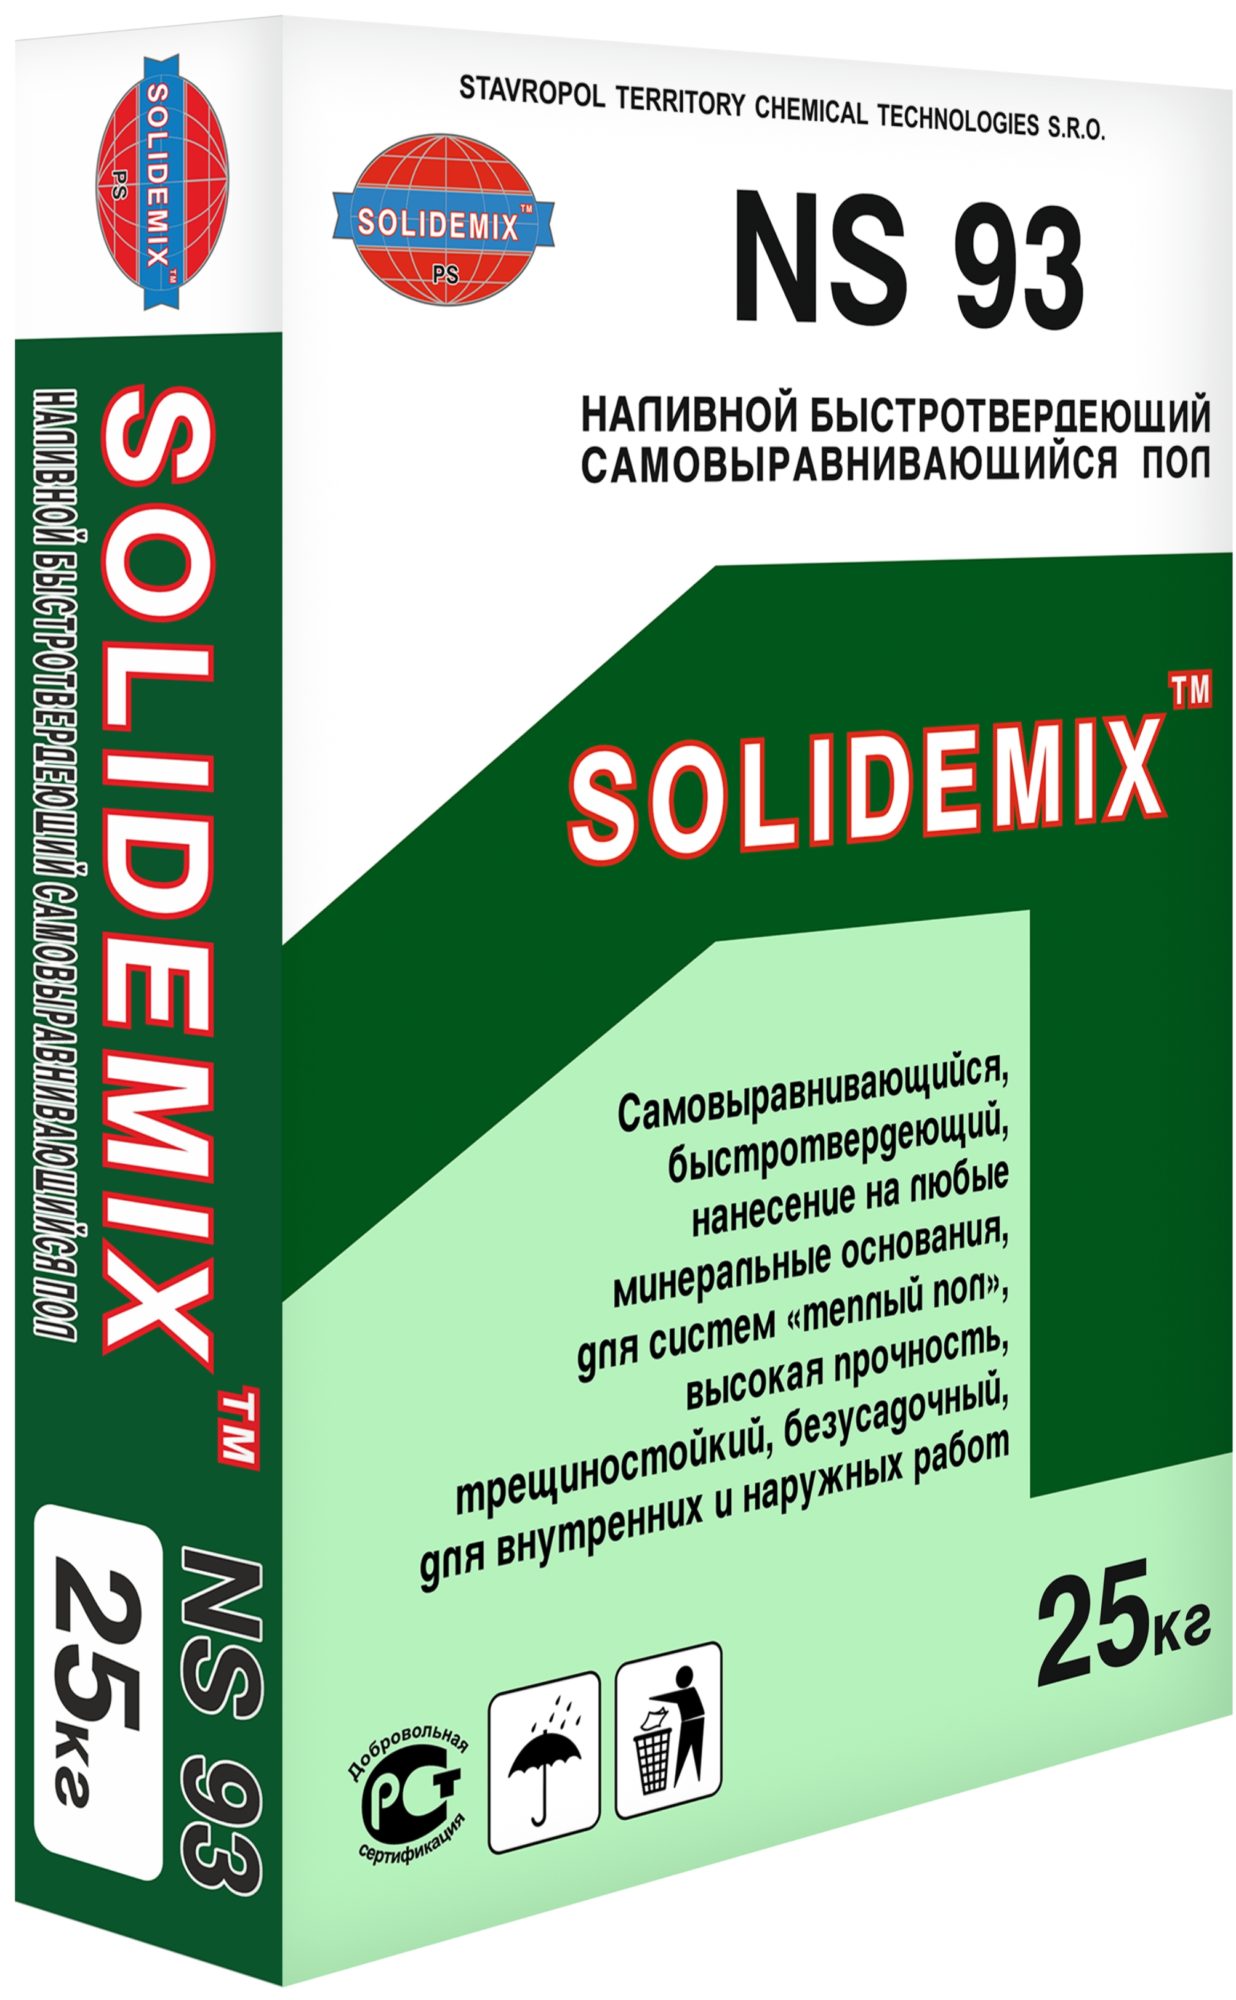 Купить Наливной быстротвердеющий самовыравнивающийся пол «SOLIDEMIX NS 93» (Нивелир) от SOLIDEMIX